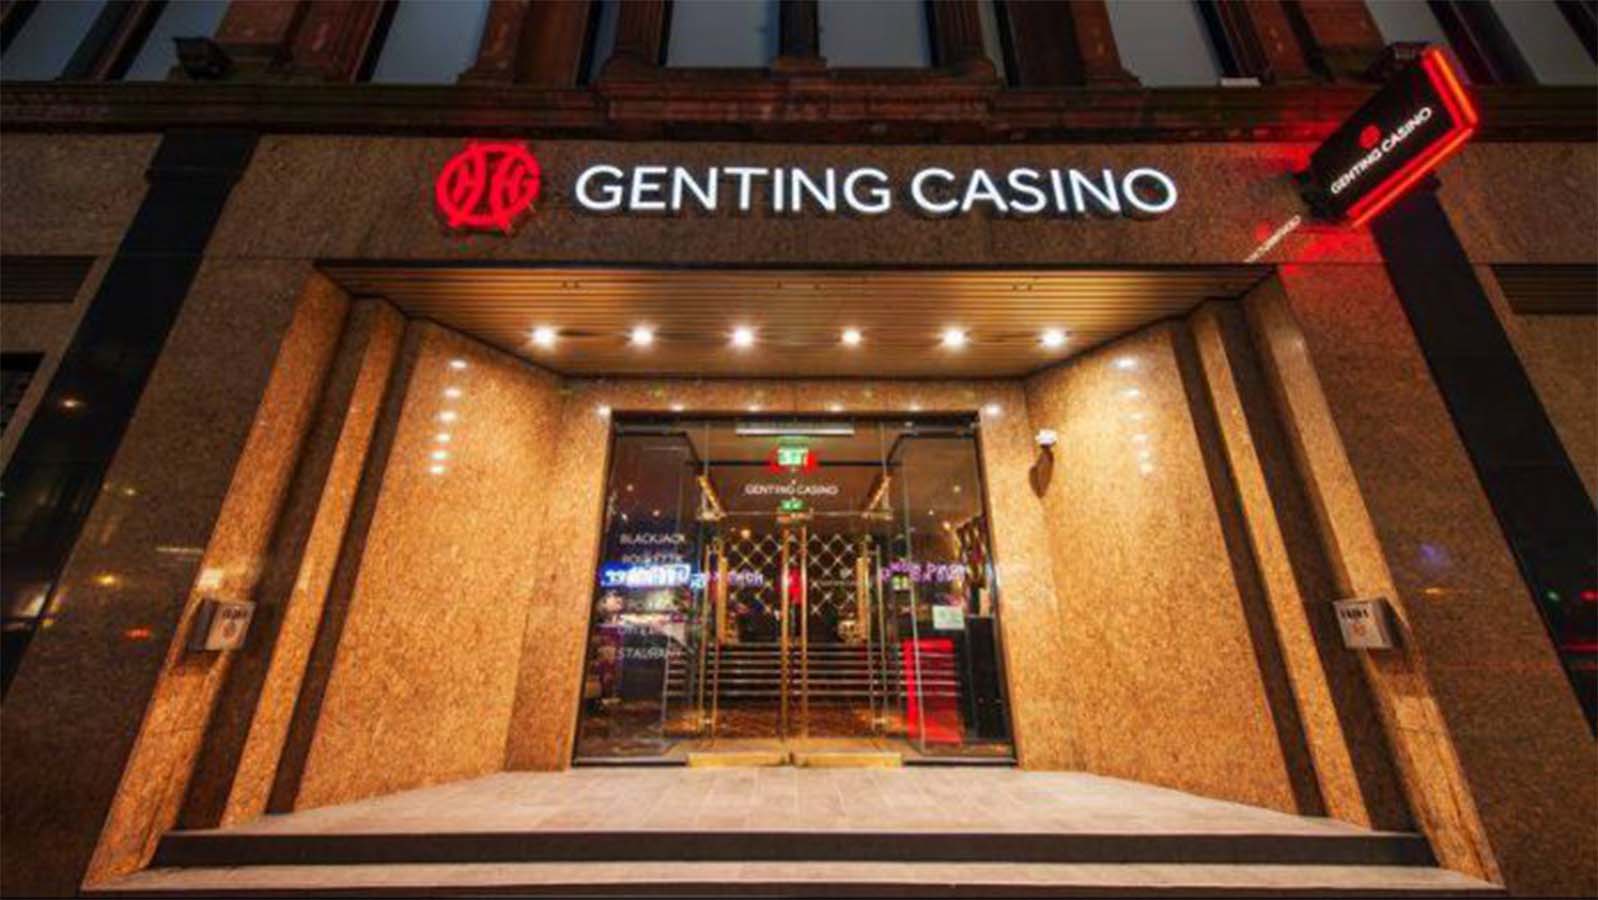 Genting Casino Chinatown